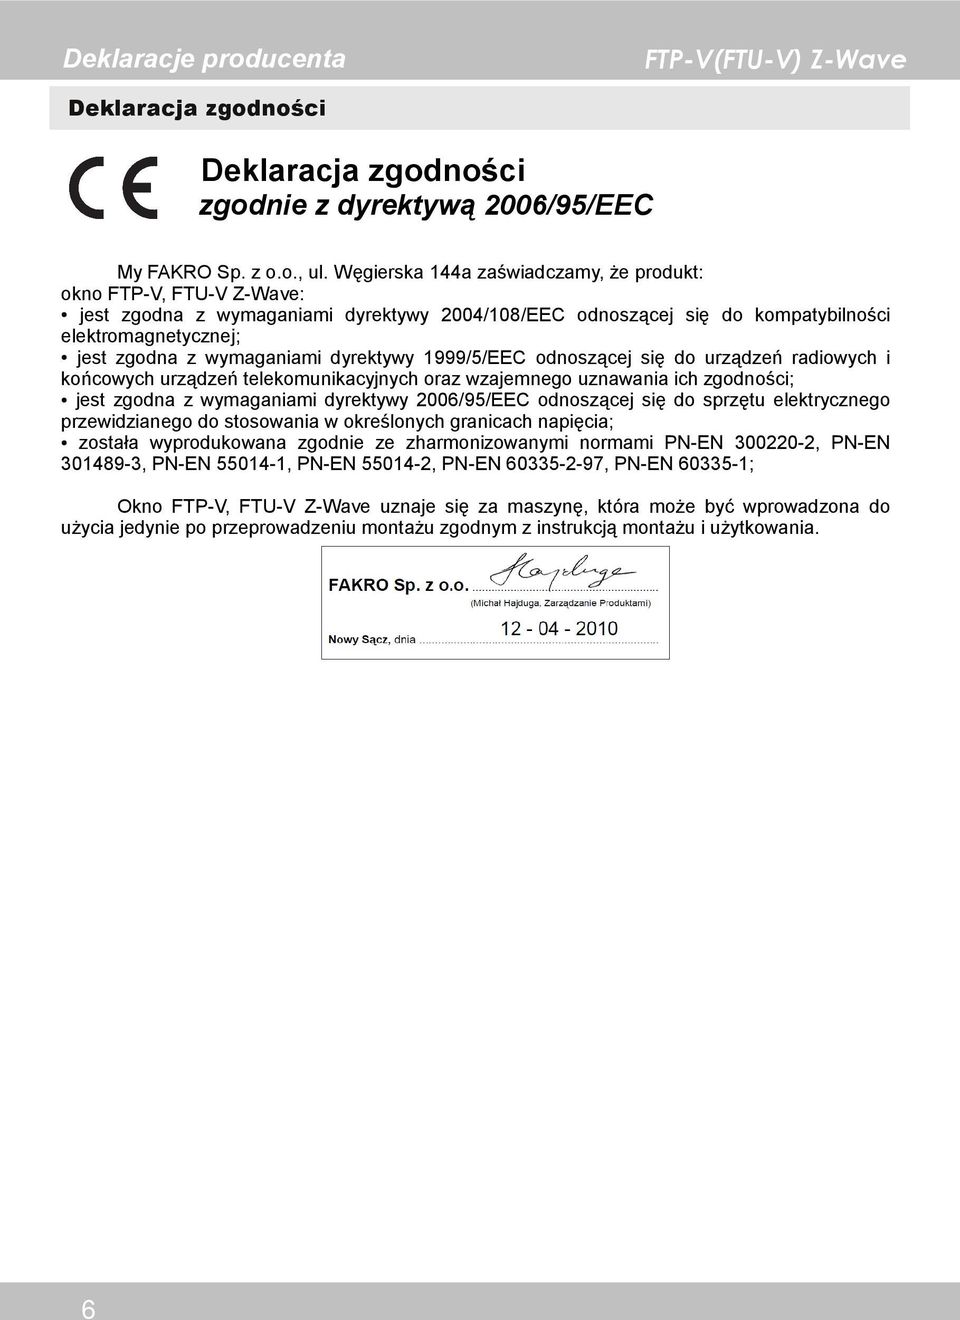 dyrektywy 1999/5/EEC odnoszącej się do urządzeń radiowych i końcowych urządzeń telekomunikacyjnych oraz wzajemnego uznawania ich zgodności; jest zgodna z wymaganiami dyrektywy 2006/95/EEC odnoszącej